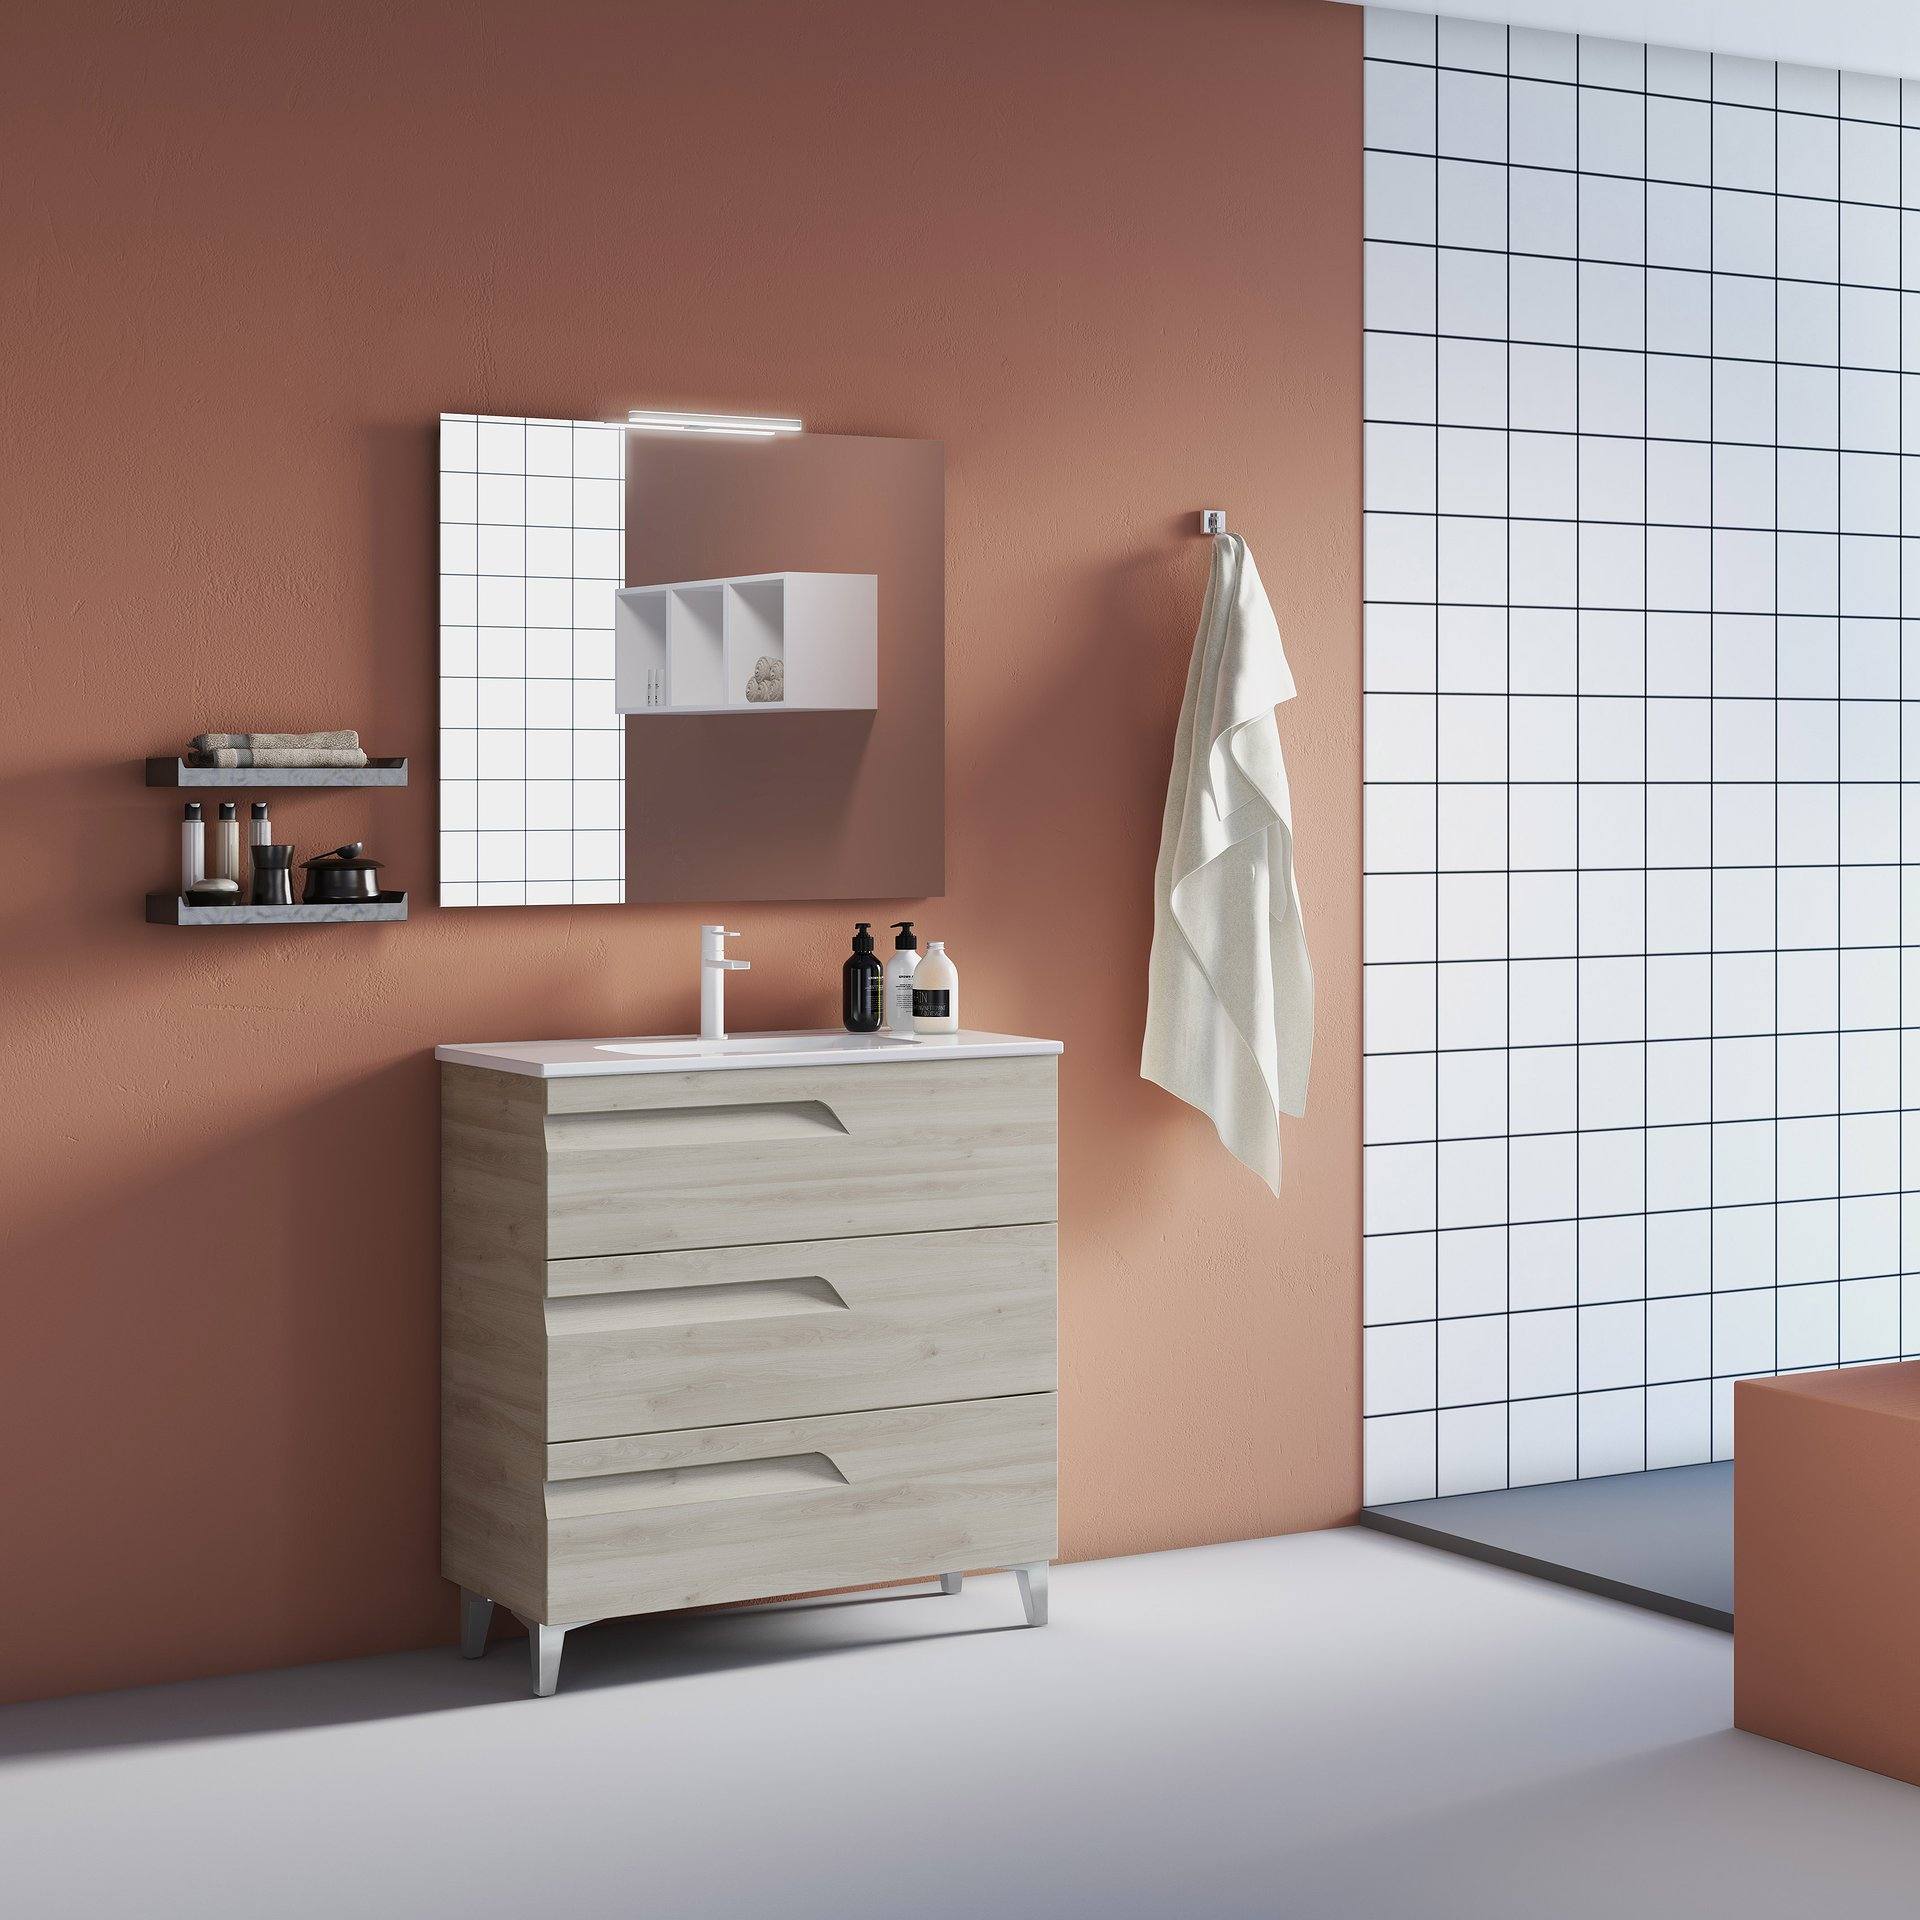 Mueble y Lavabo: Royo vitale de baño fondo reducido 3 cajones + lavabo slim